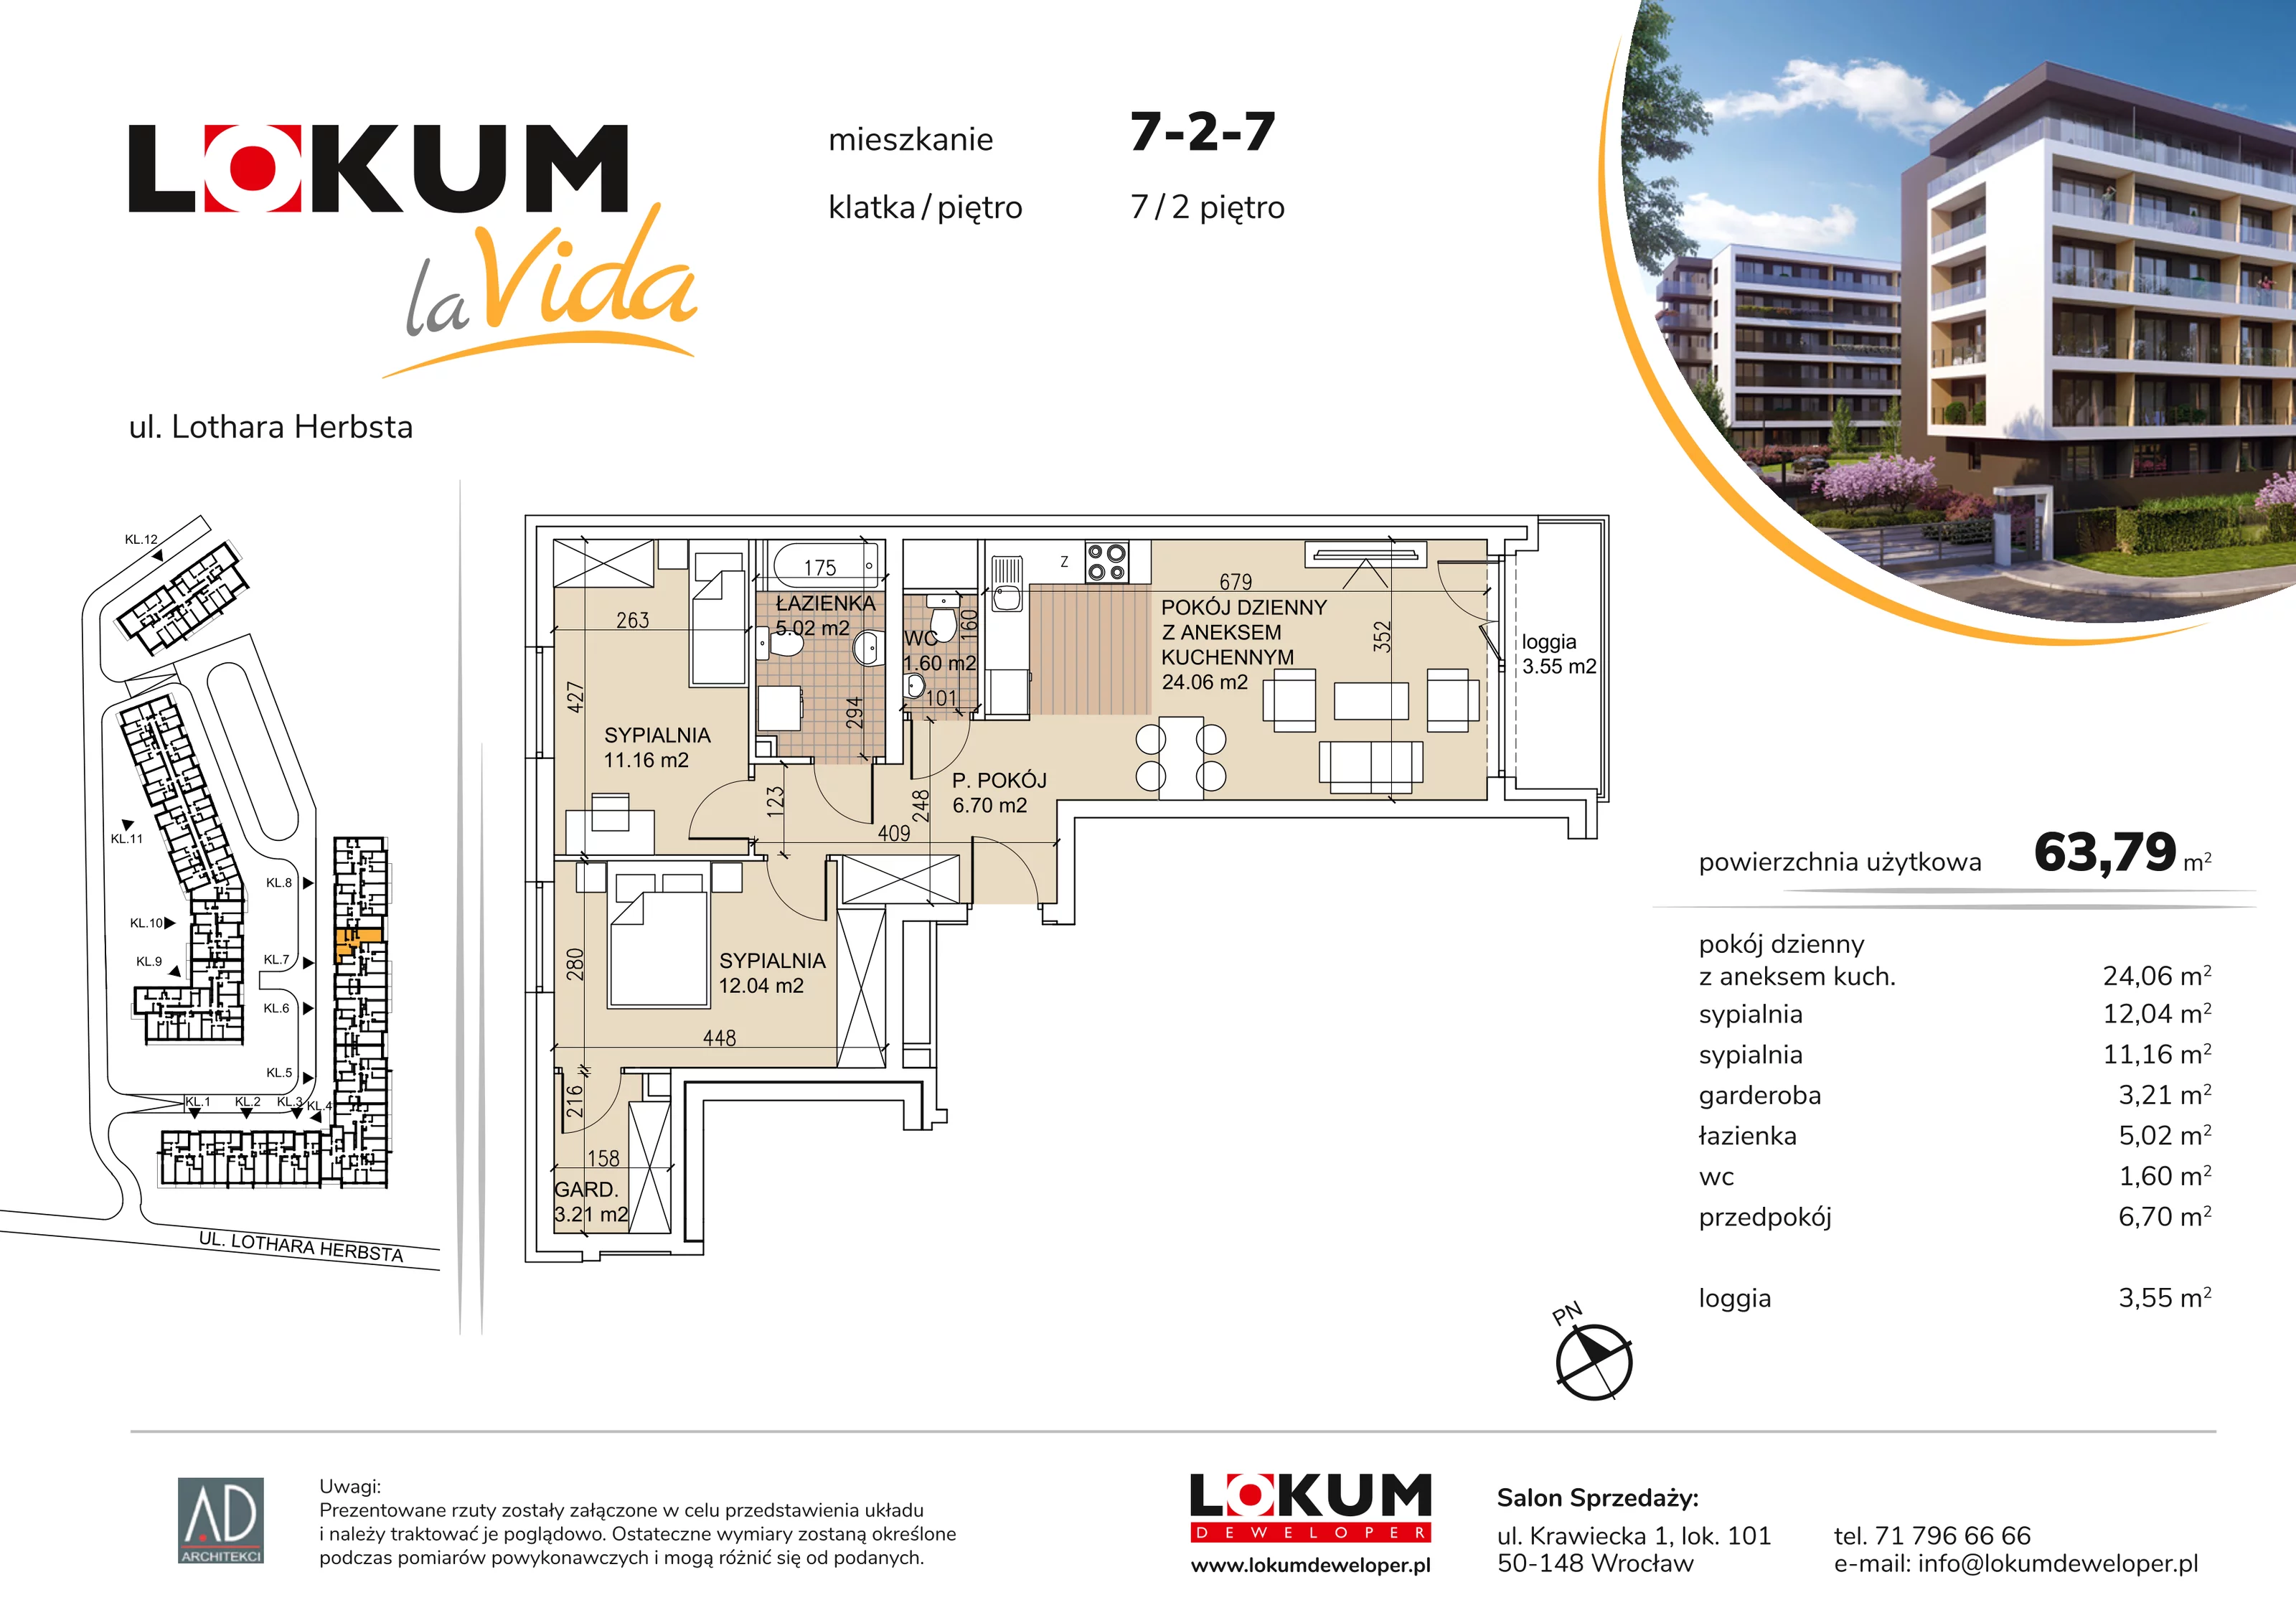 Mieszkanie 63,79 m², piętro 2, oferta nr 7-2-7, Lokum la Vida, Wrocław, Sołtysowice, ul. Lothara Herbsta